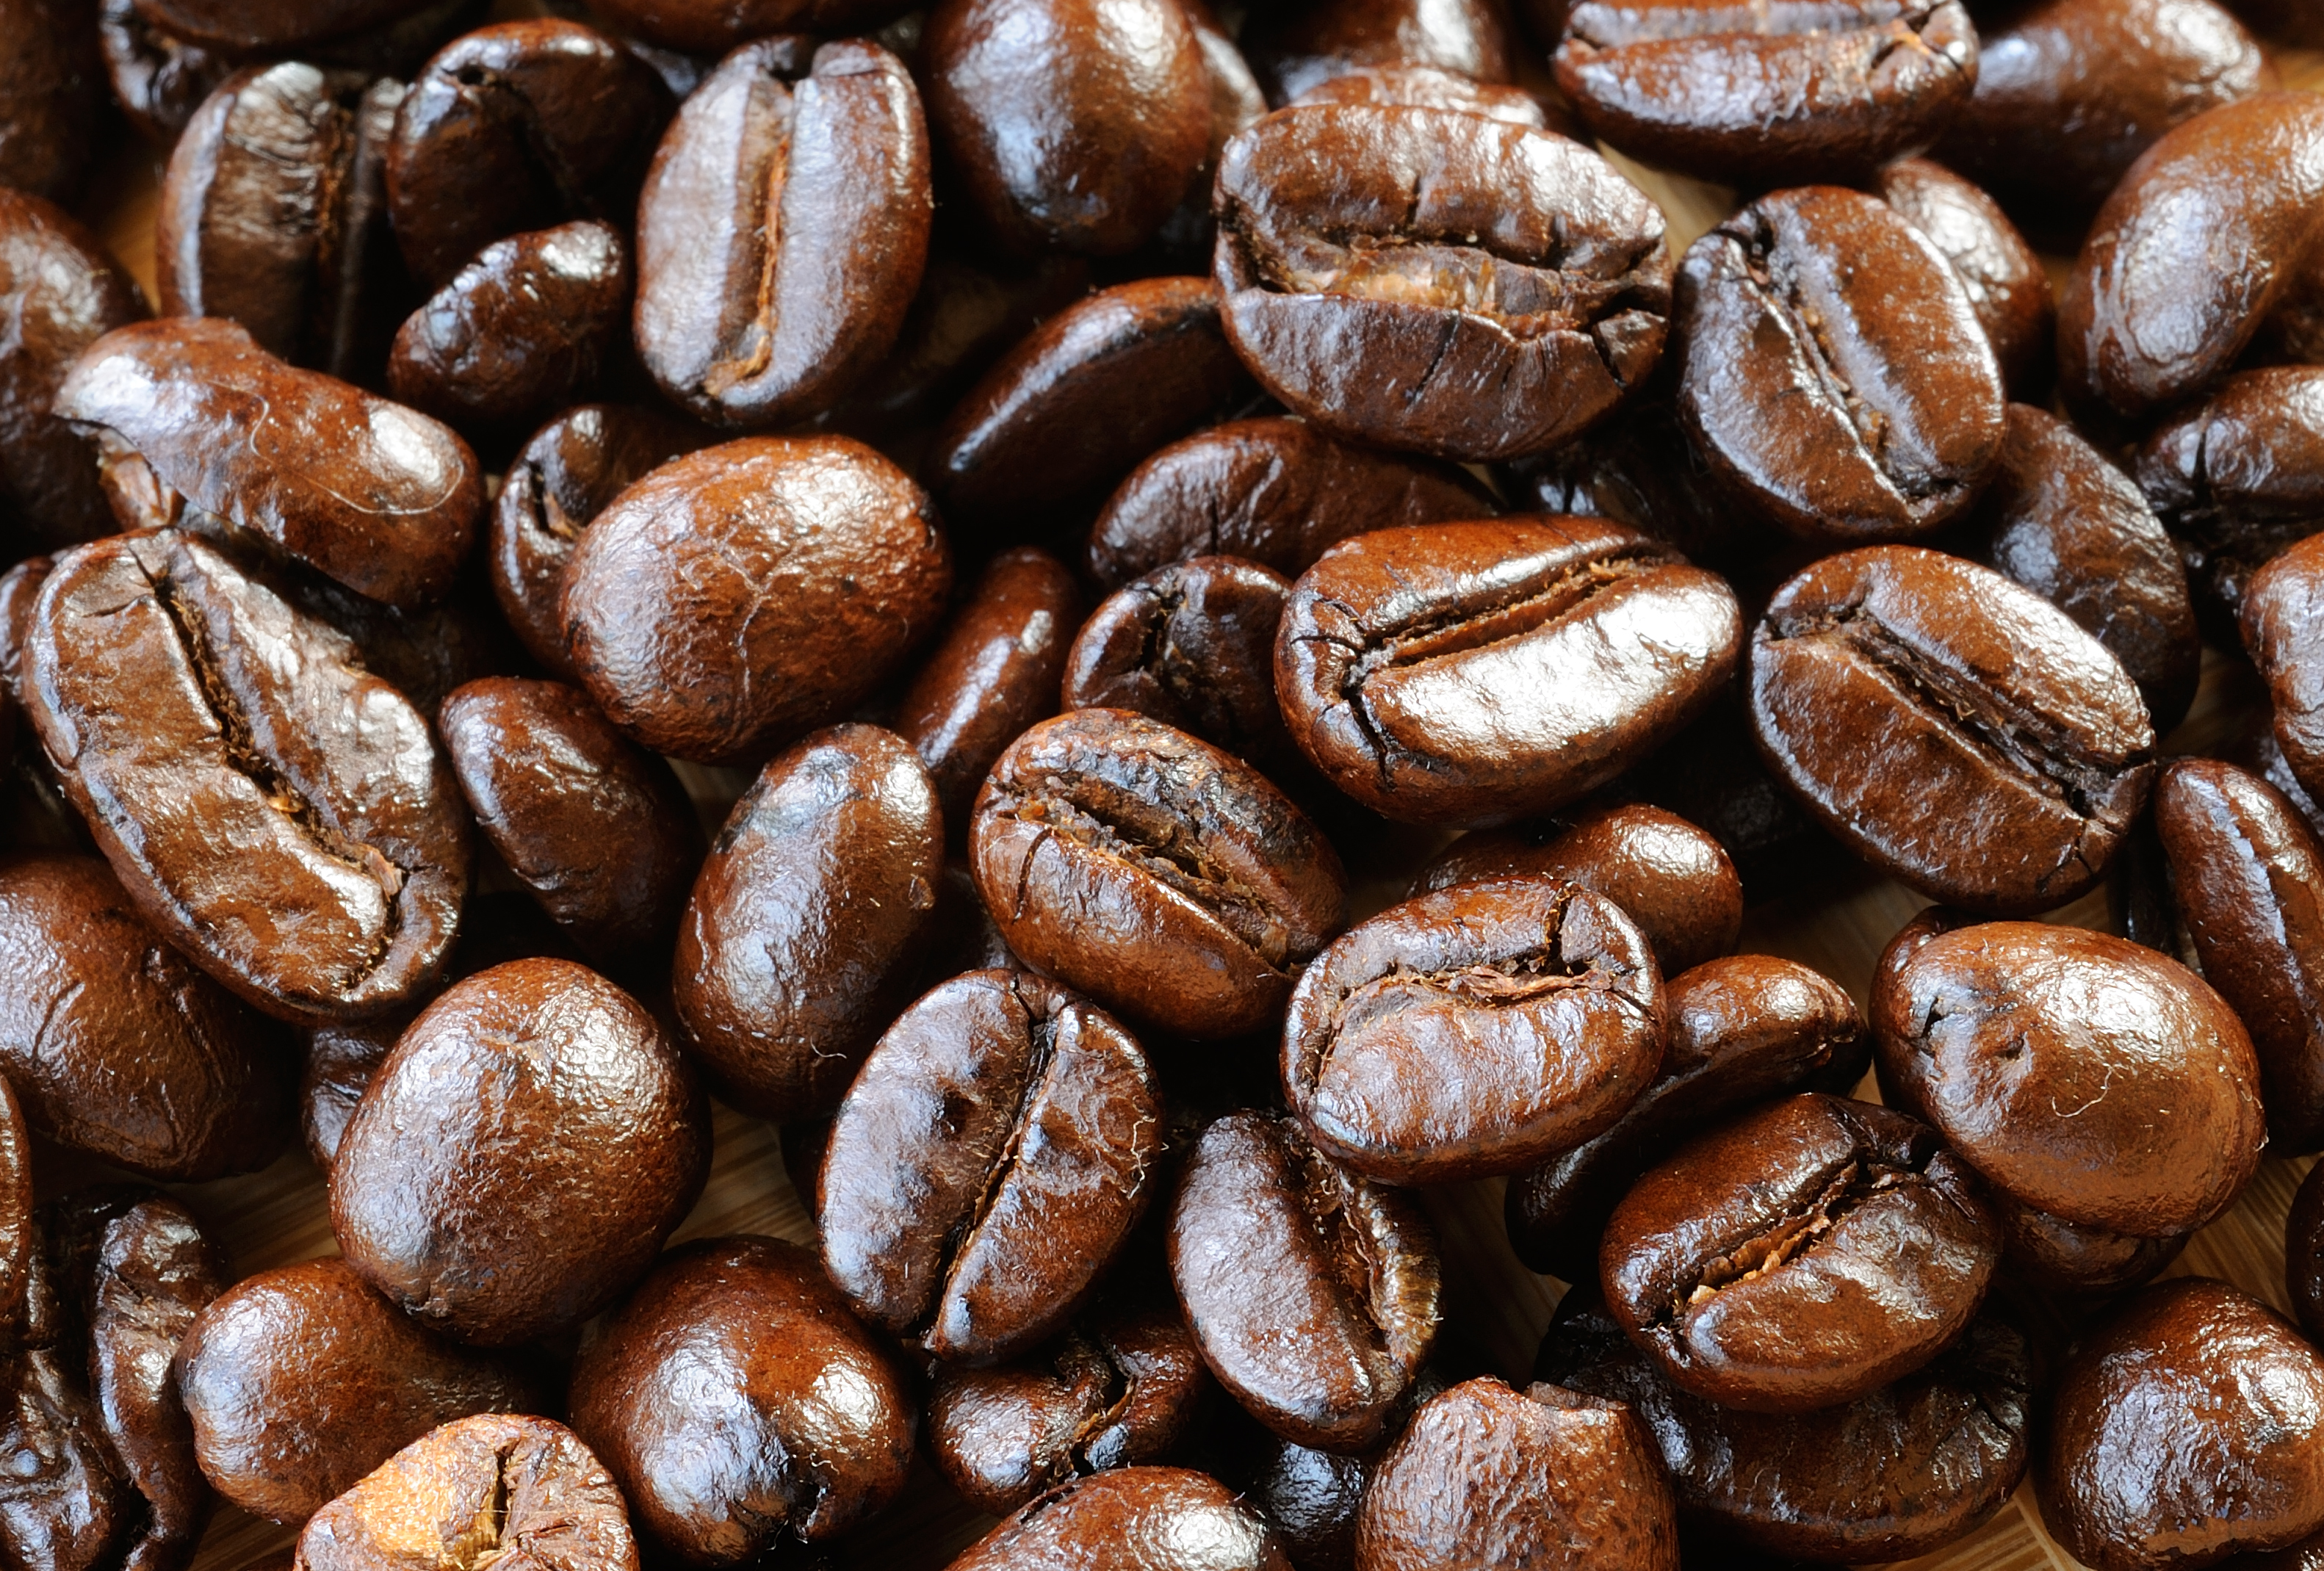 macro-coffee-beans-2021-09-03-19-04-02-utc